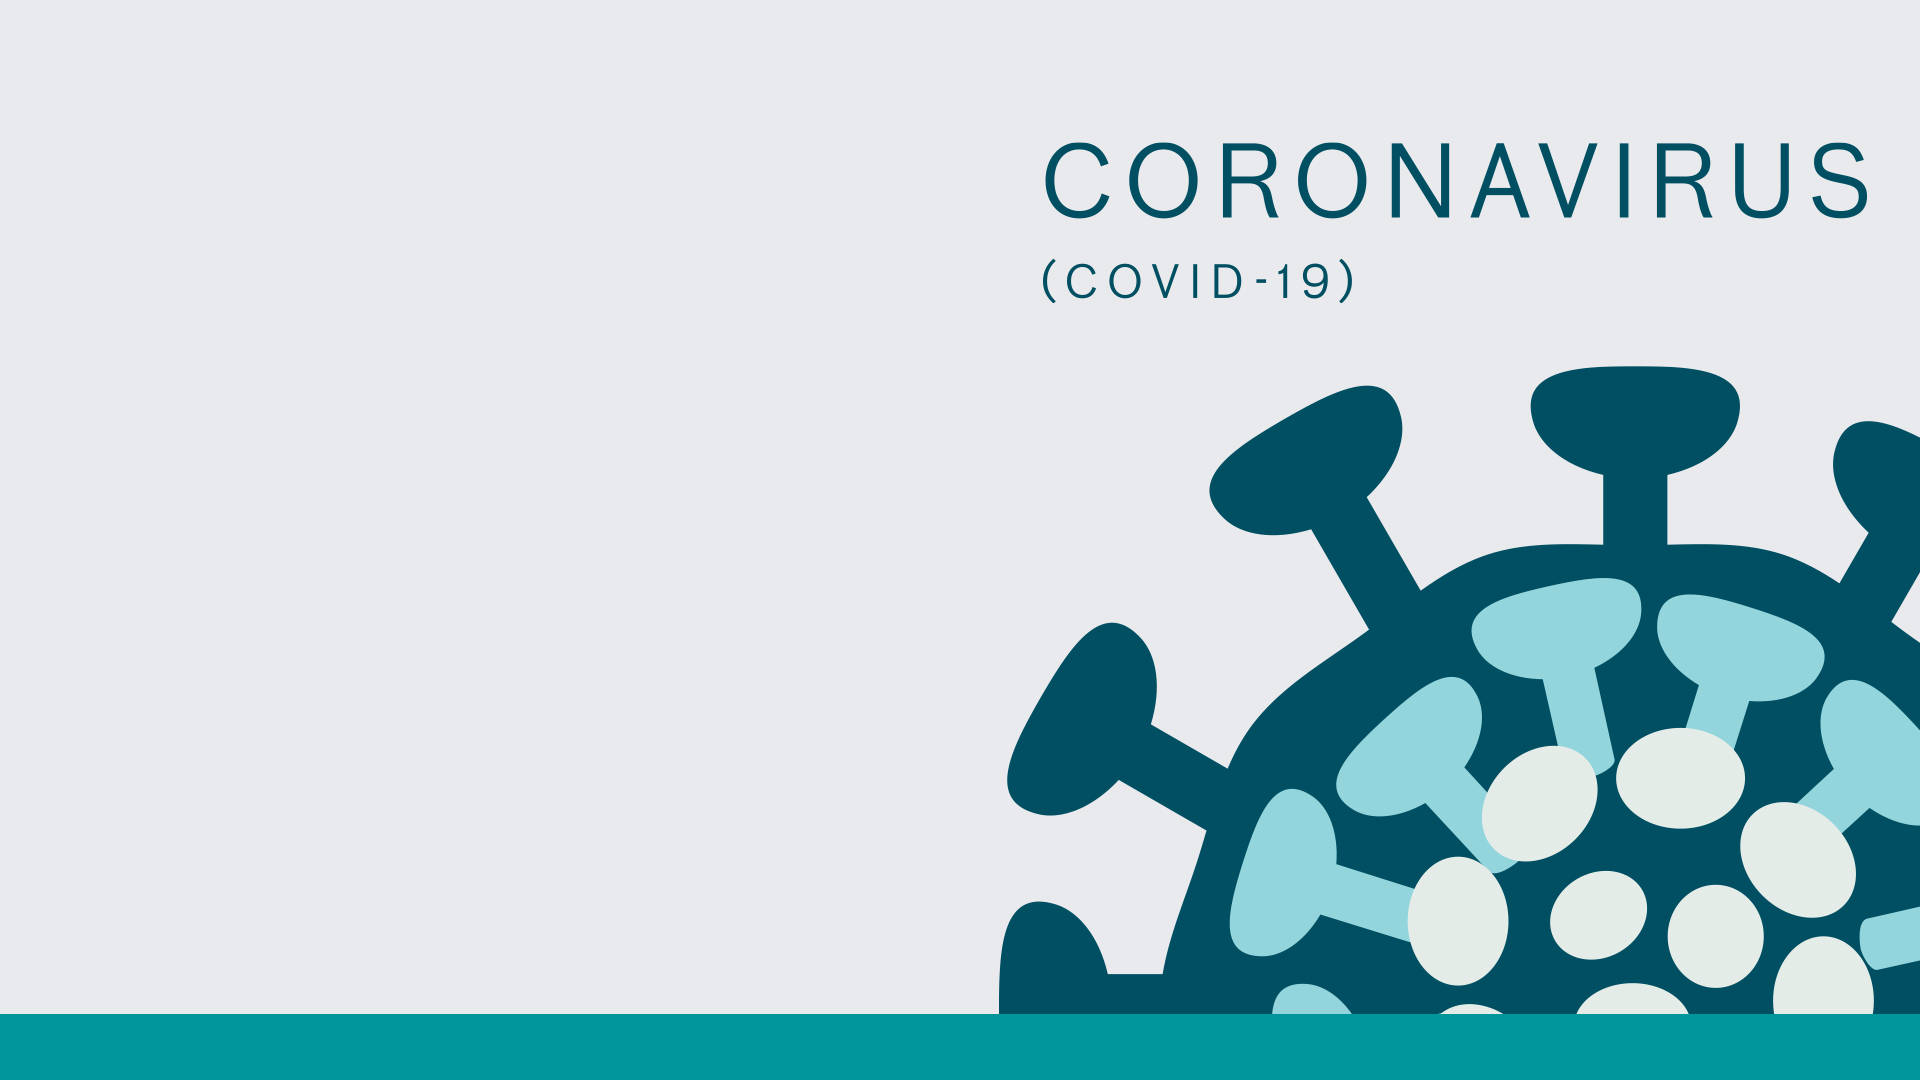 Coronavirus Pandemic Poster Background